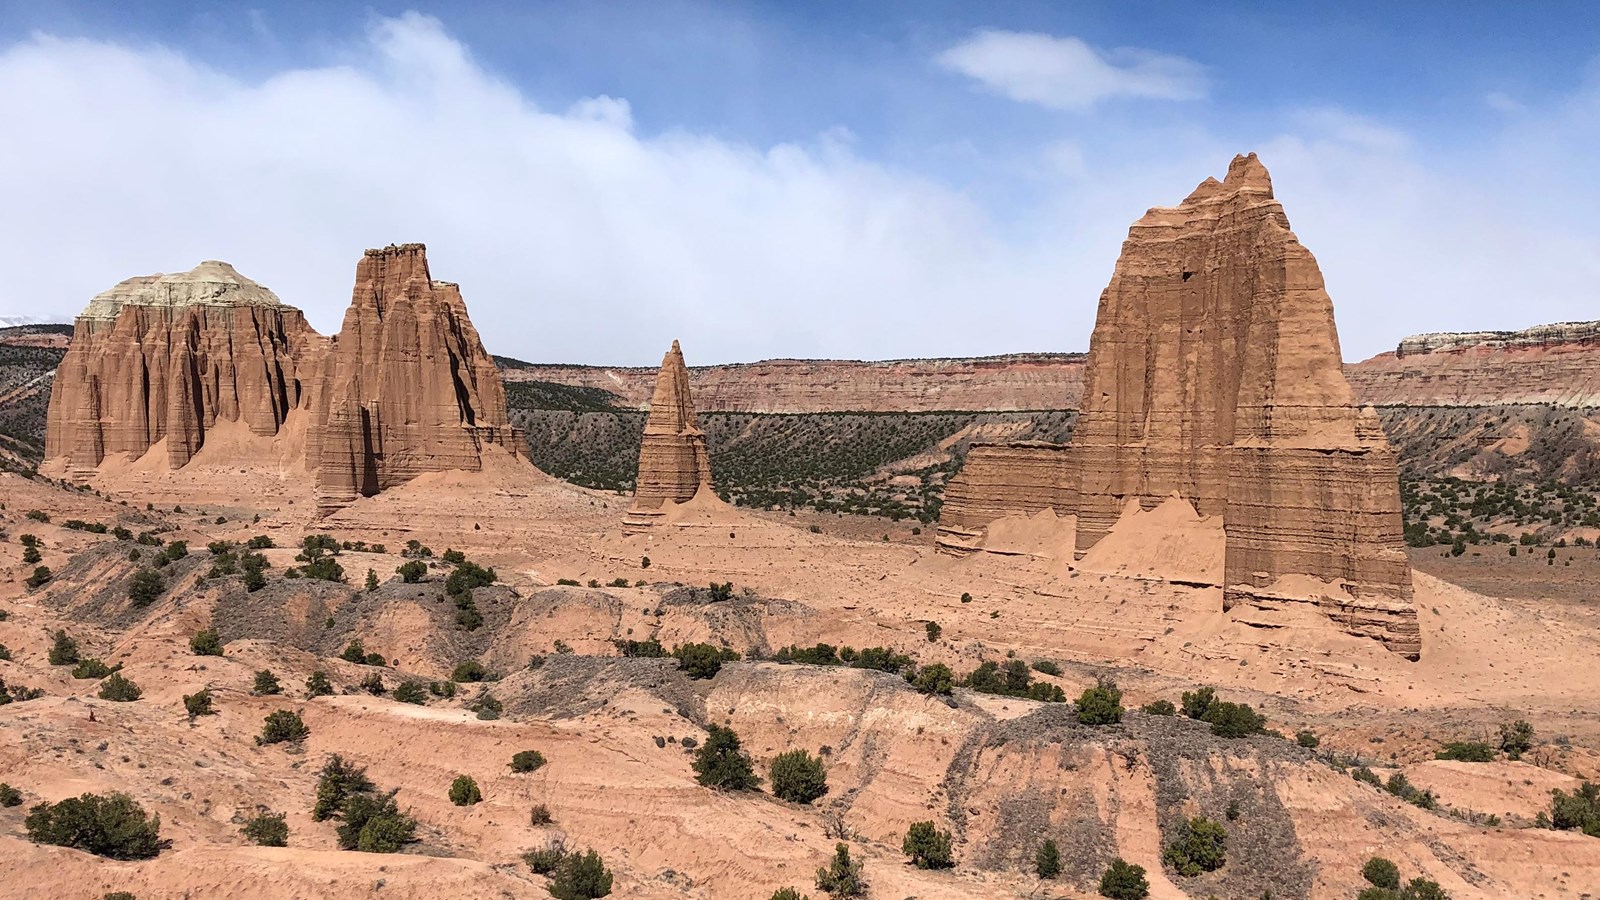 large reddish brown monoliths rise from the desert floor